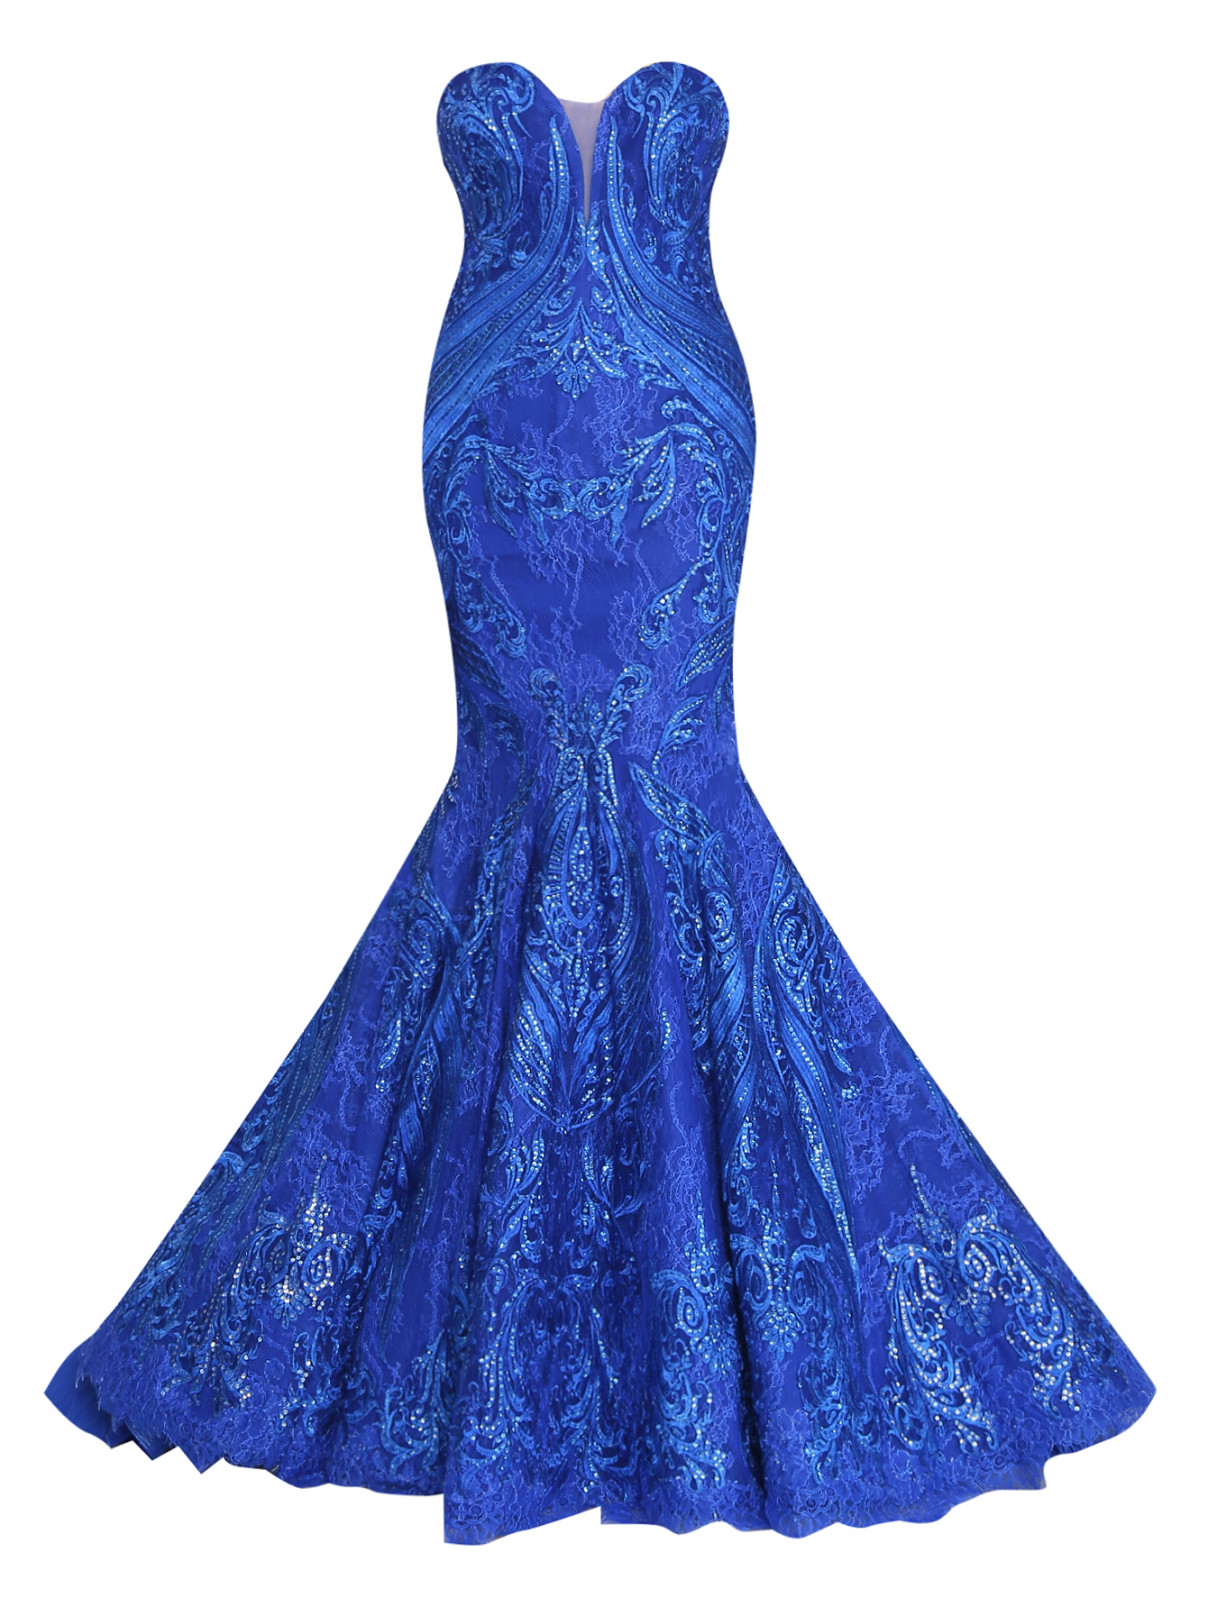 Платье с вышивкой, декорированное паетками Tony Ward  –  Общий вид  – Цвет:  Синий